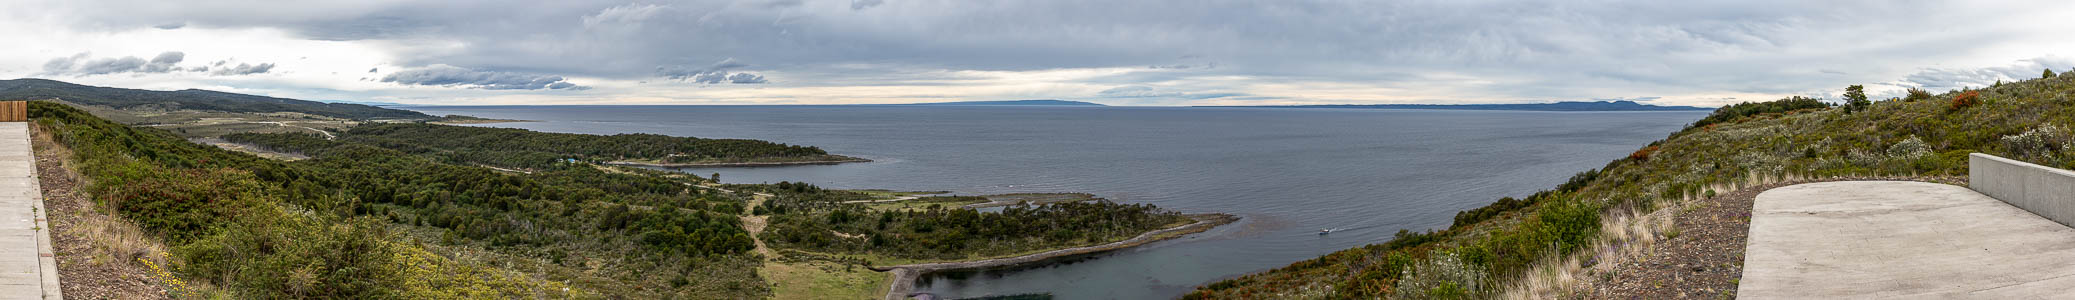 Parque del Estrecho de Magallanes